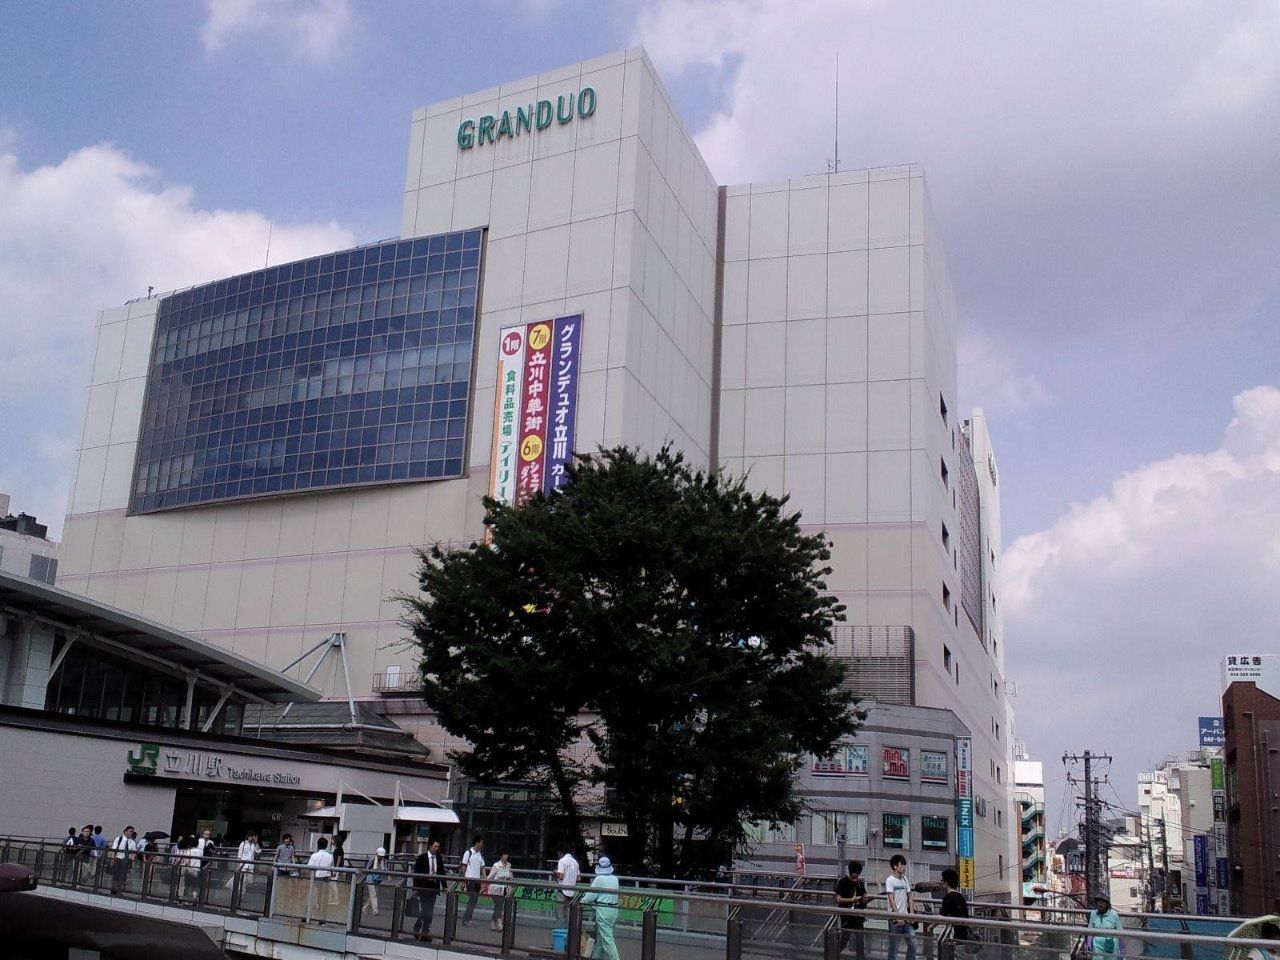 立川駅周辺には集客力のある商業施設が多数あり